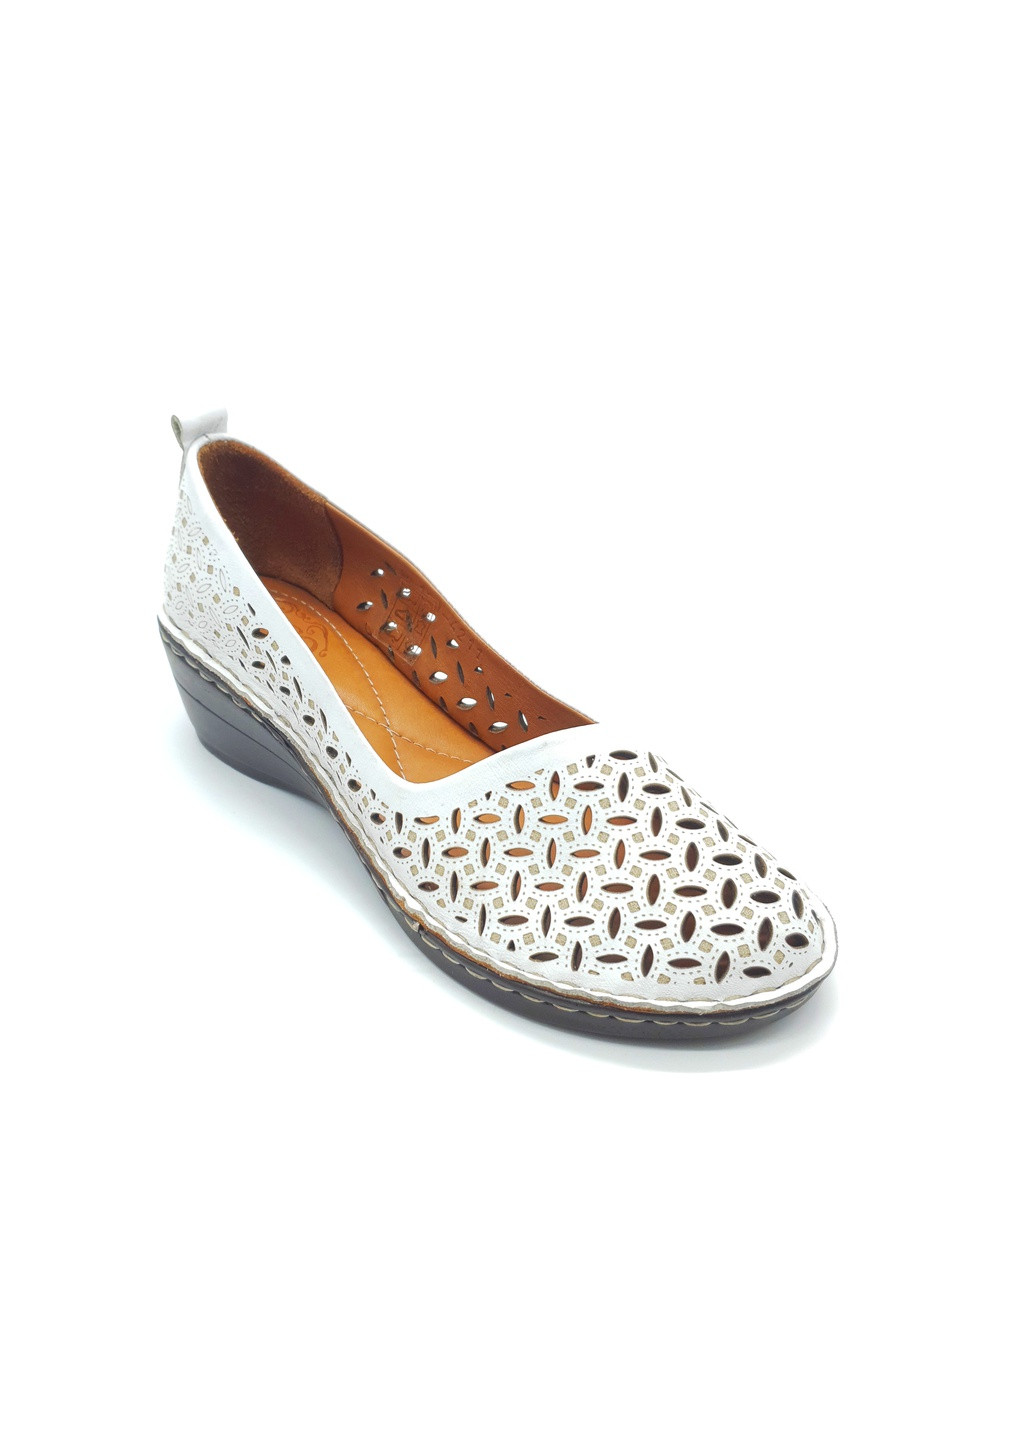 Белые женские туфли белые кожаные os-17-3 25,5 см (р) Osso